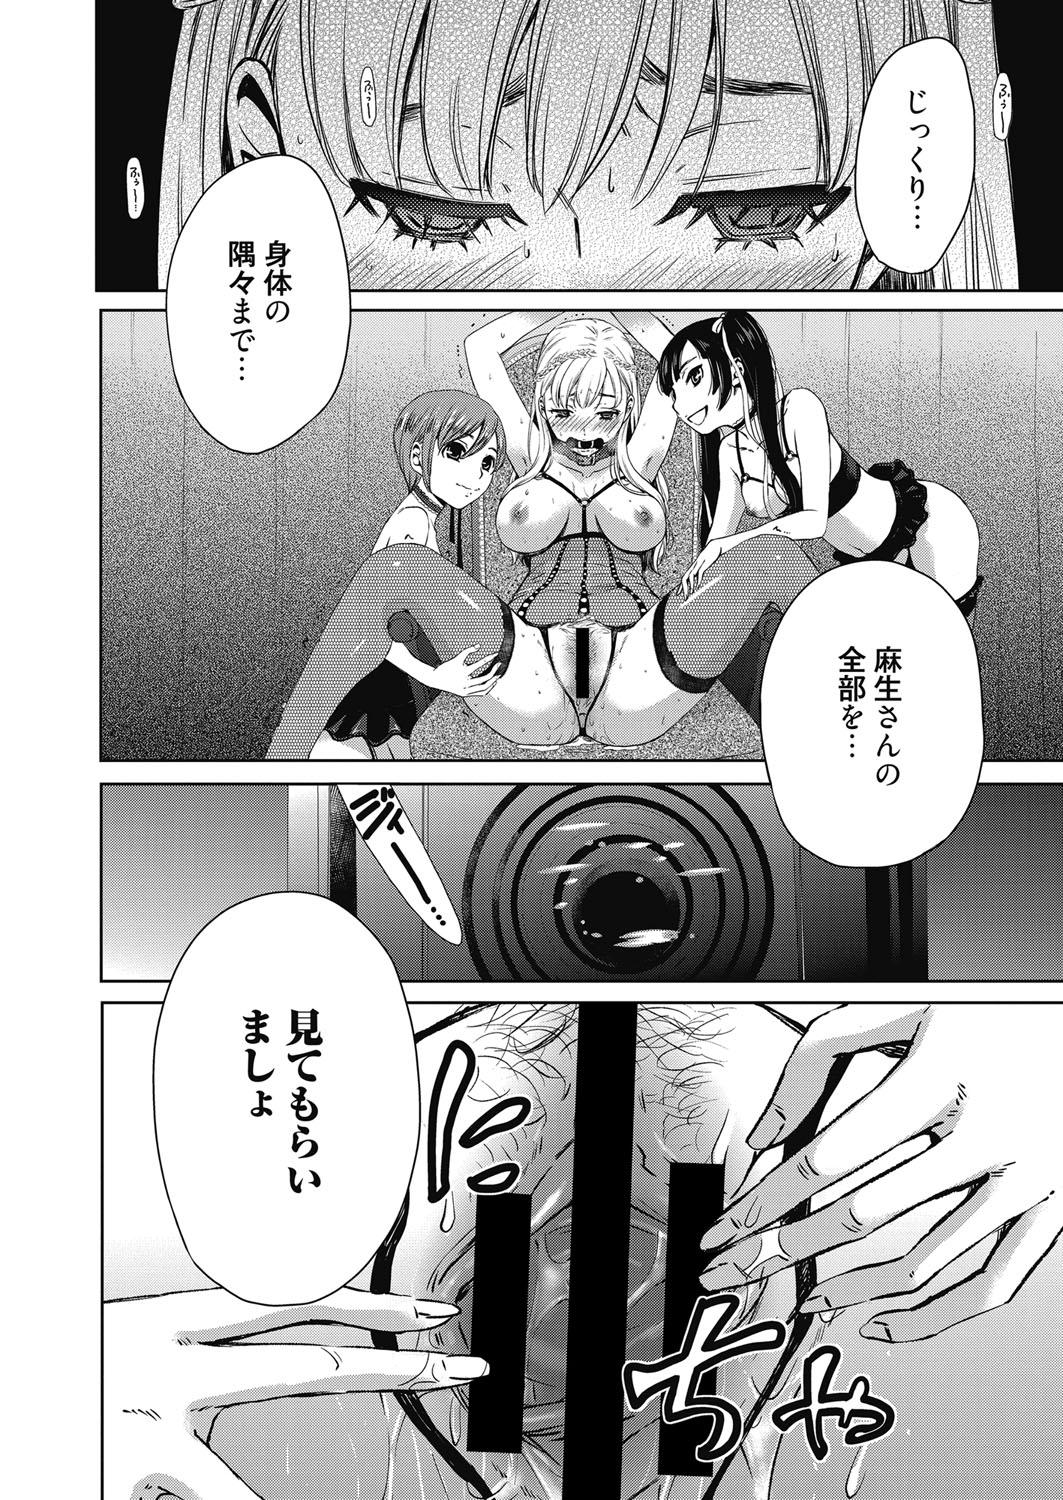 Bed Web Manga Bangaichi Vol. 23 Jerk - Page 9